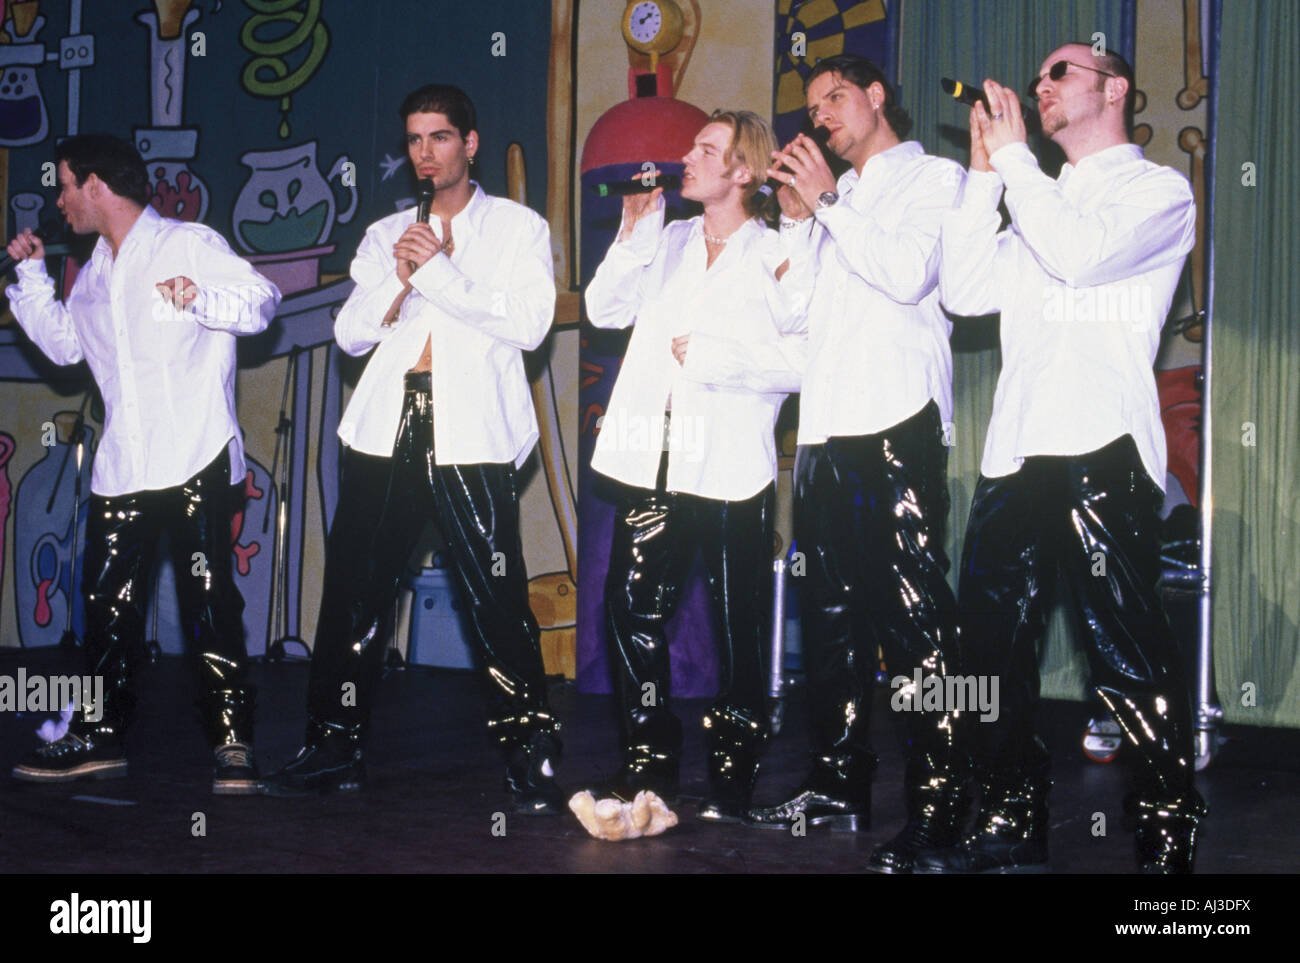 BOYZONE  - Irish boy band in 1996 Stock Photo